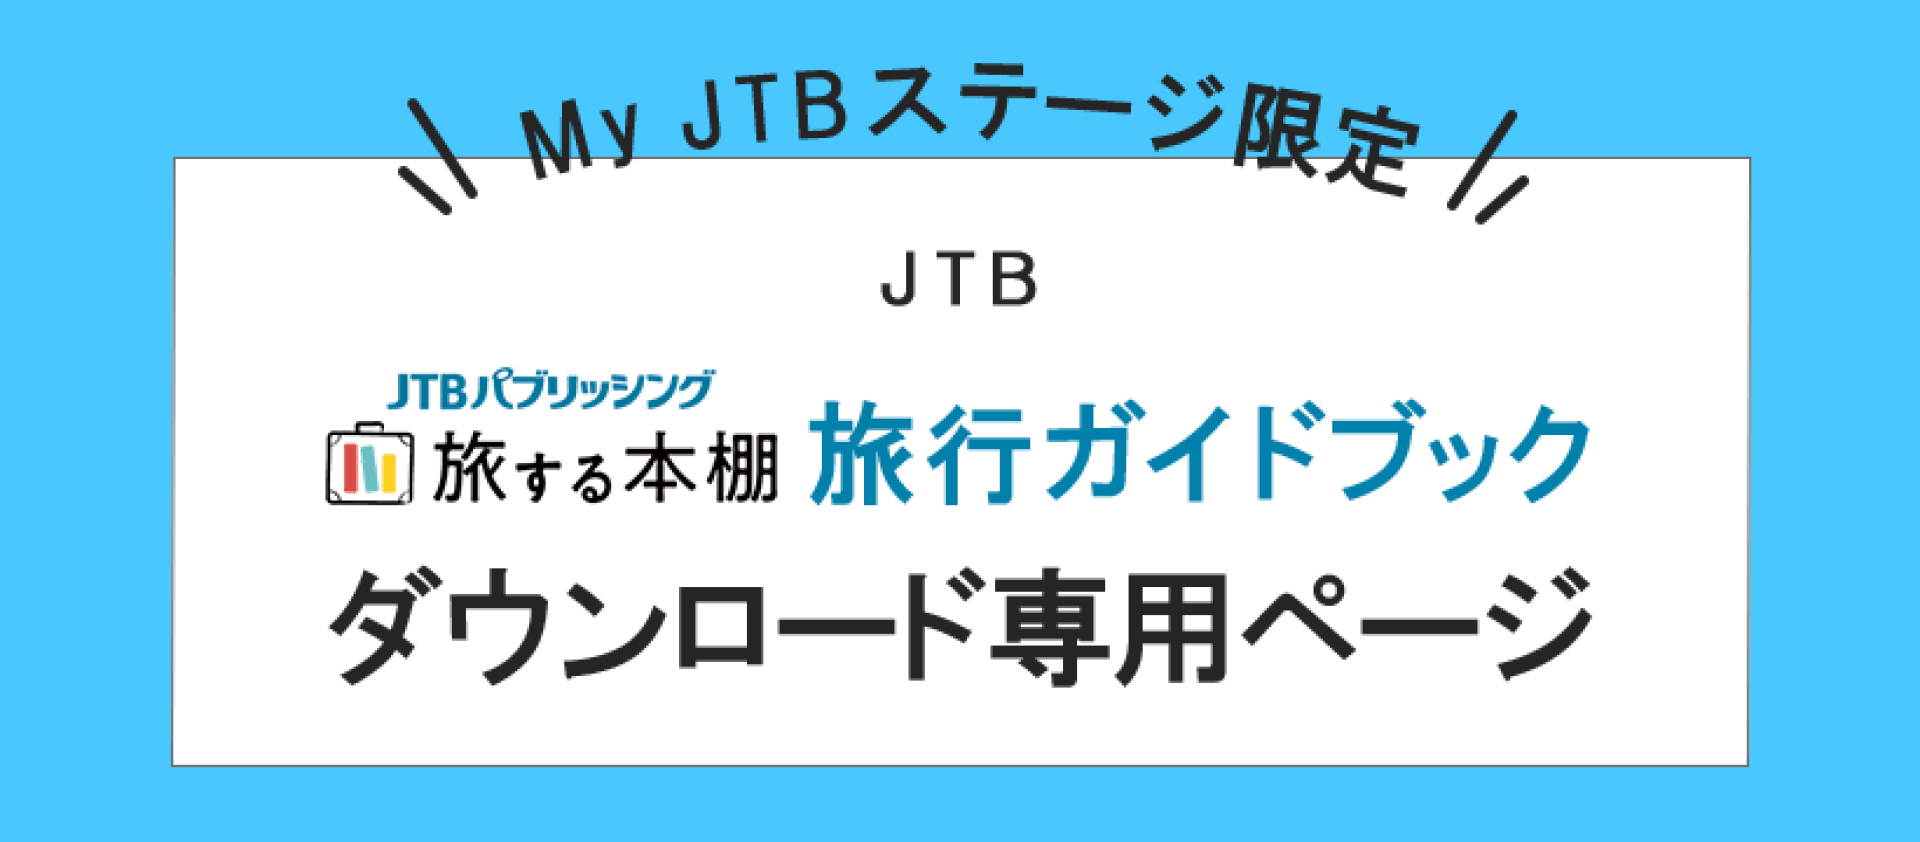 JTB MyJTBステージ限定「旅する本棚」旅行ガイドブックダウンロード